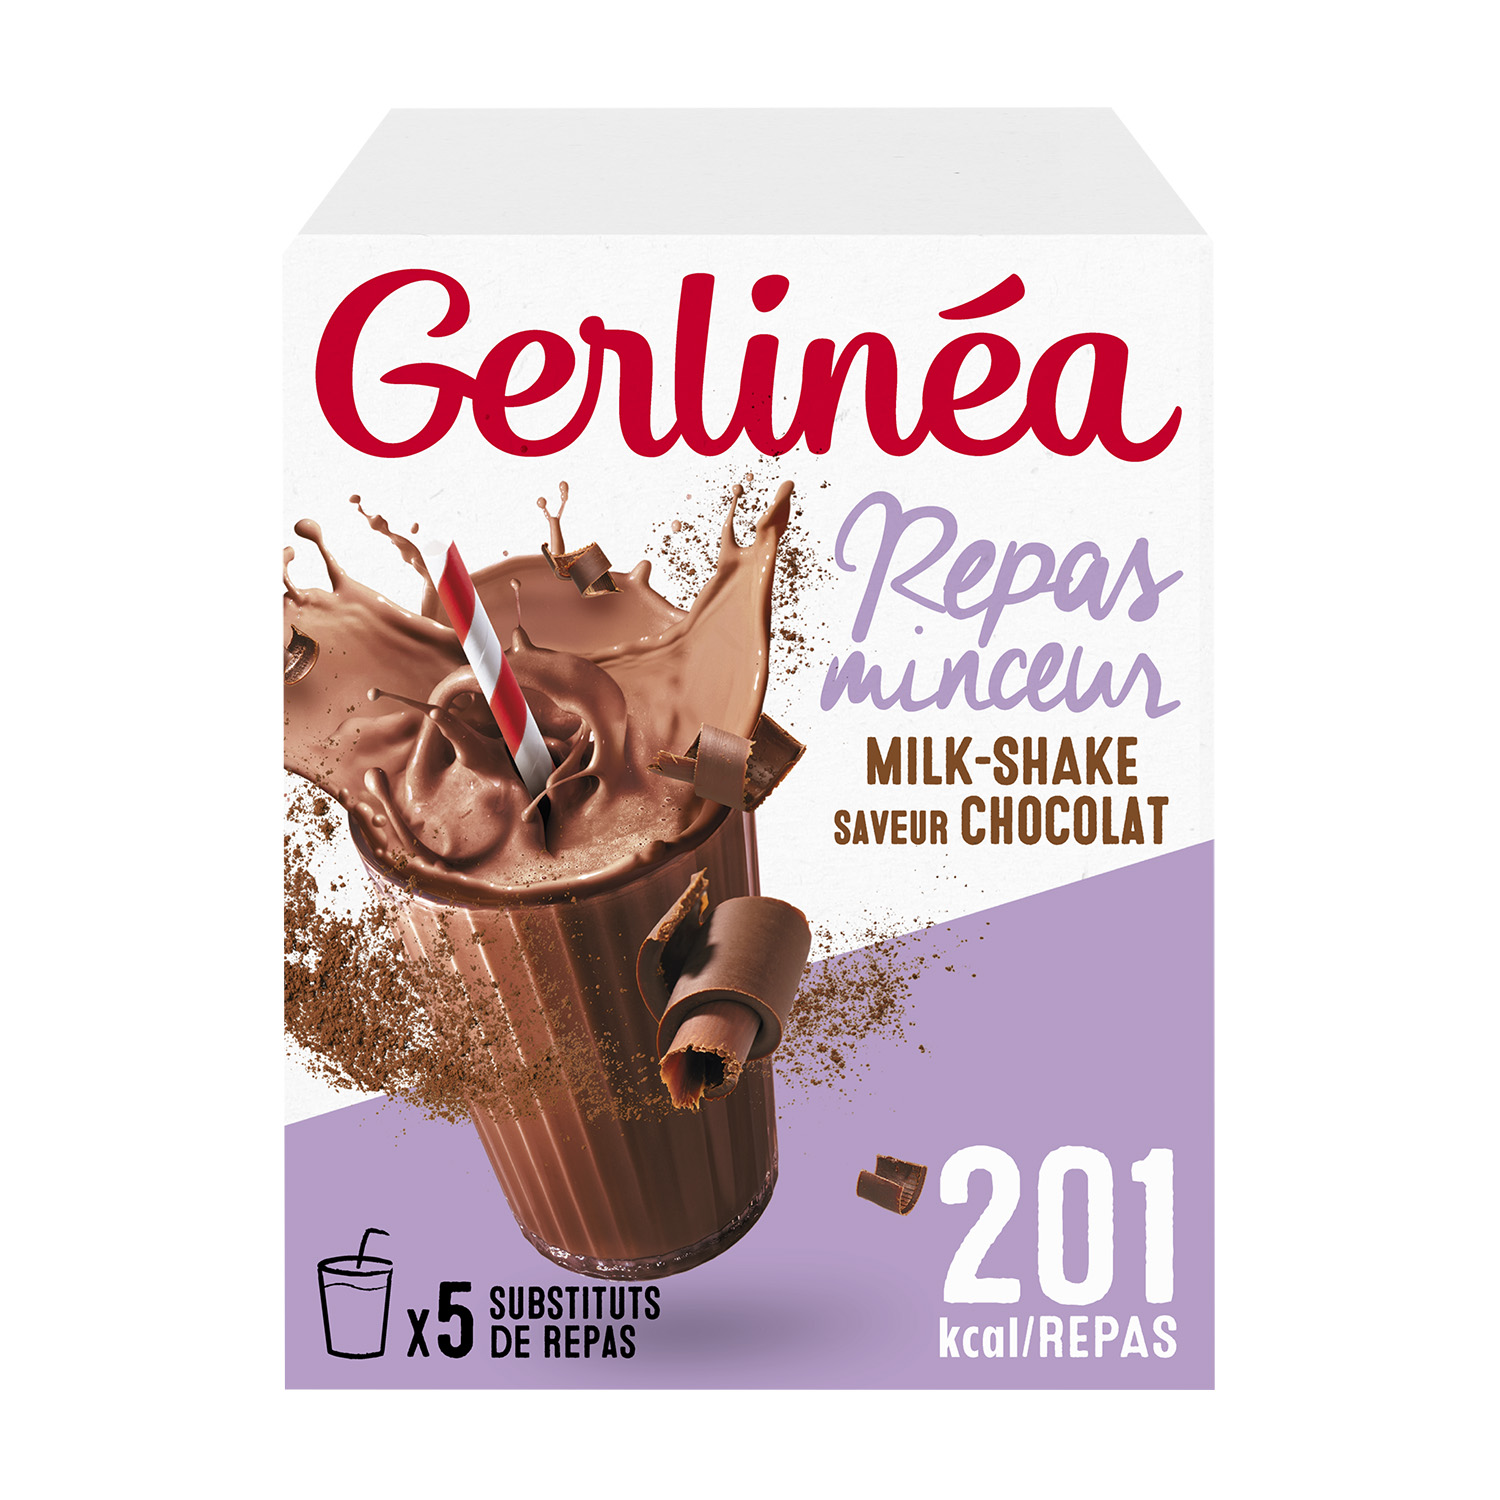 Gerlinéa Assortiment Milkshakes Minceur riche en protéines, 60 repa